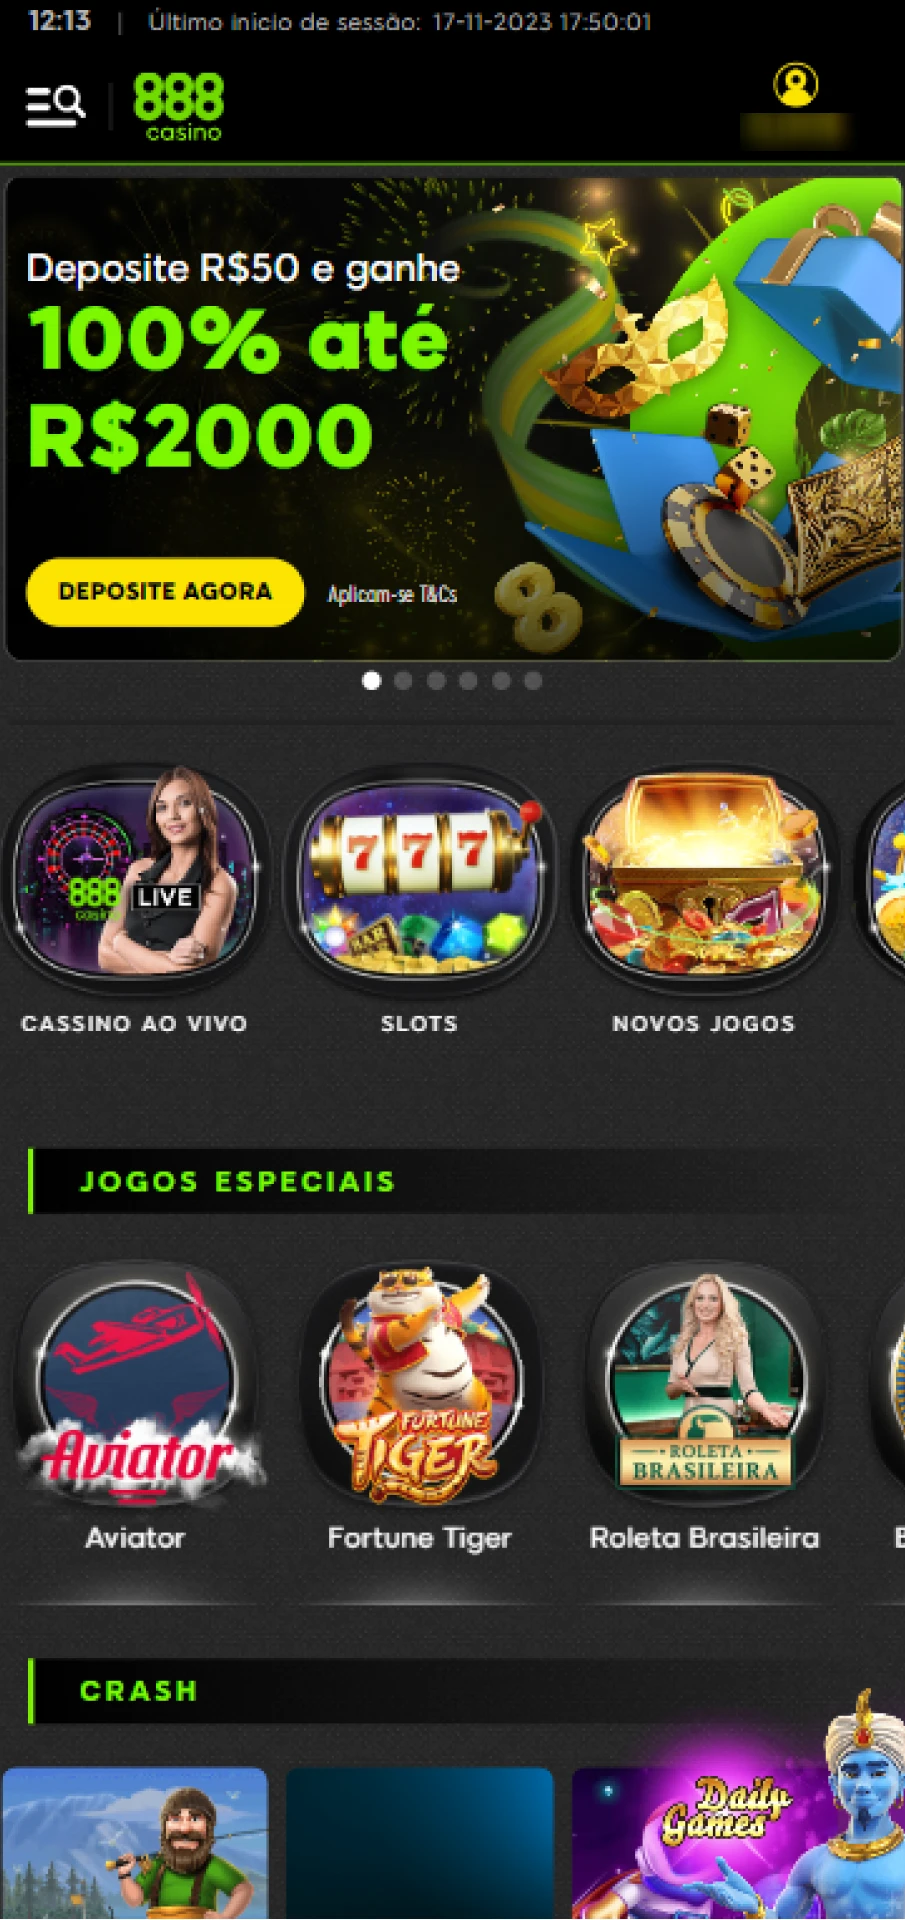 Página principal do aplicativo 888 casino.